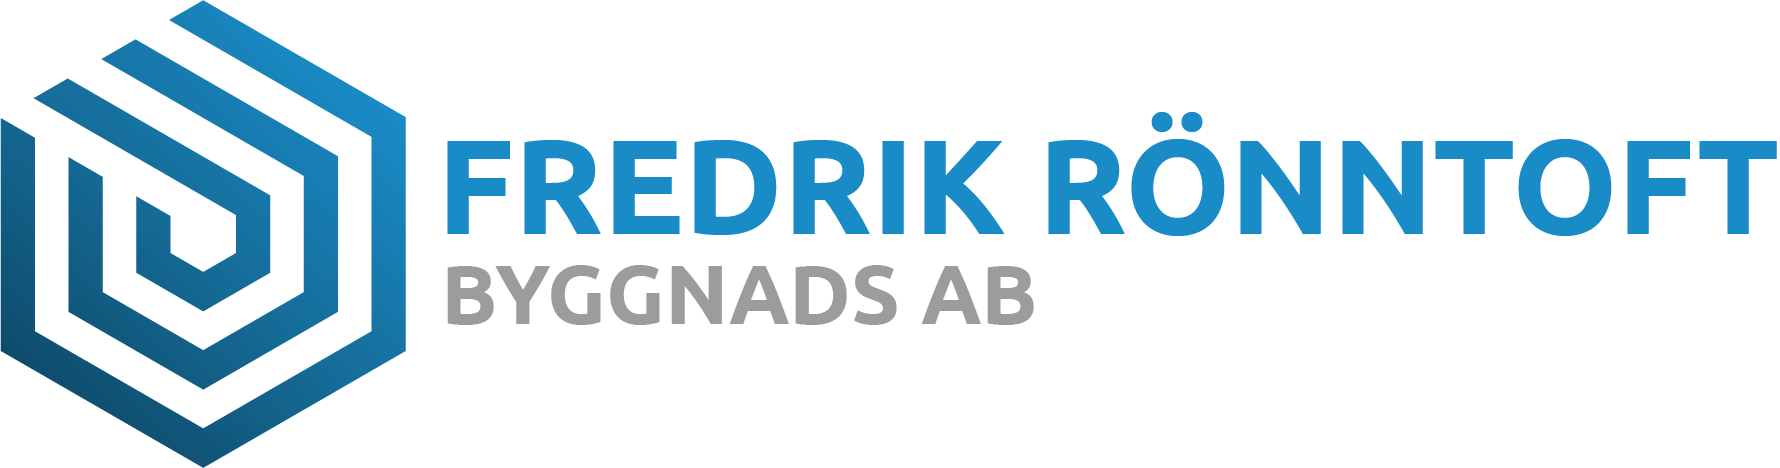 Fredrik Rönntoft Byggnads AB